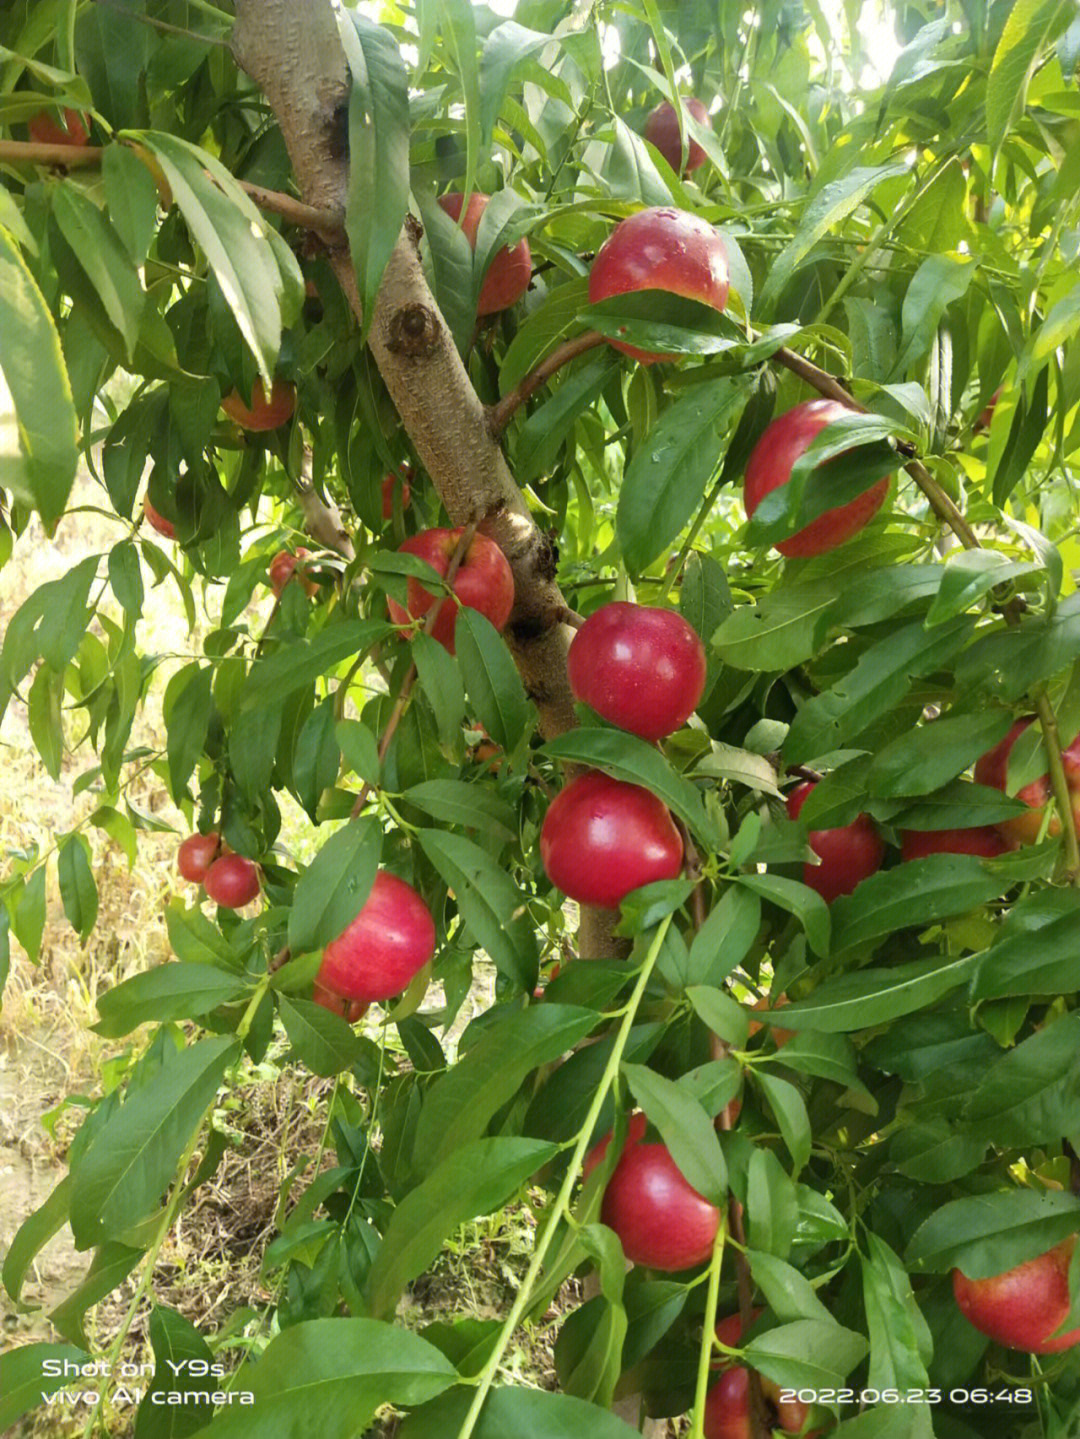 早48油桃品种介绍图片